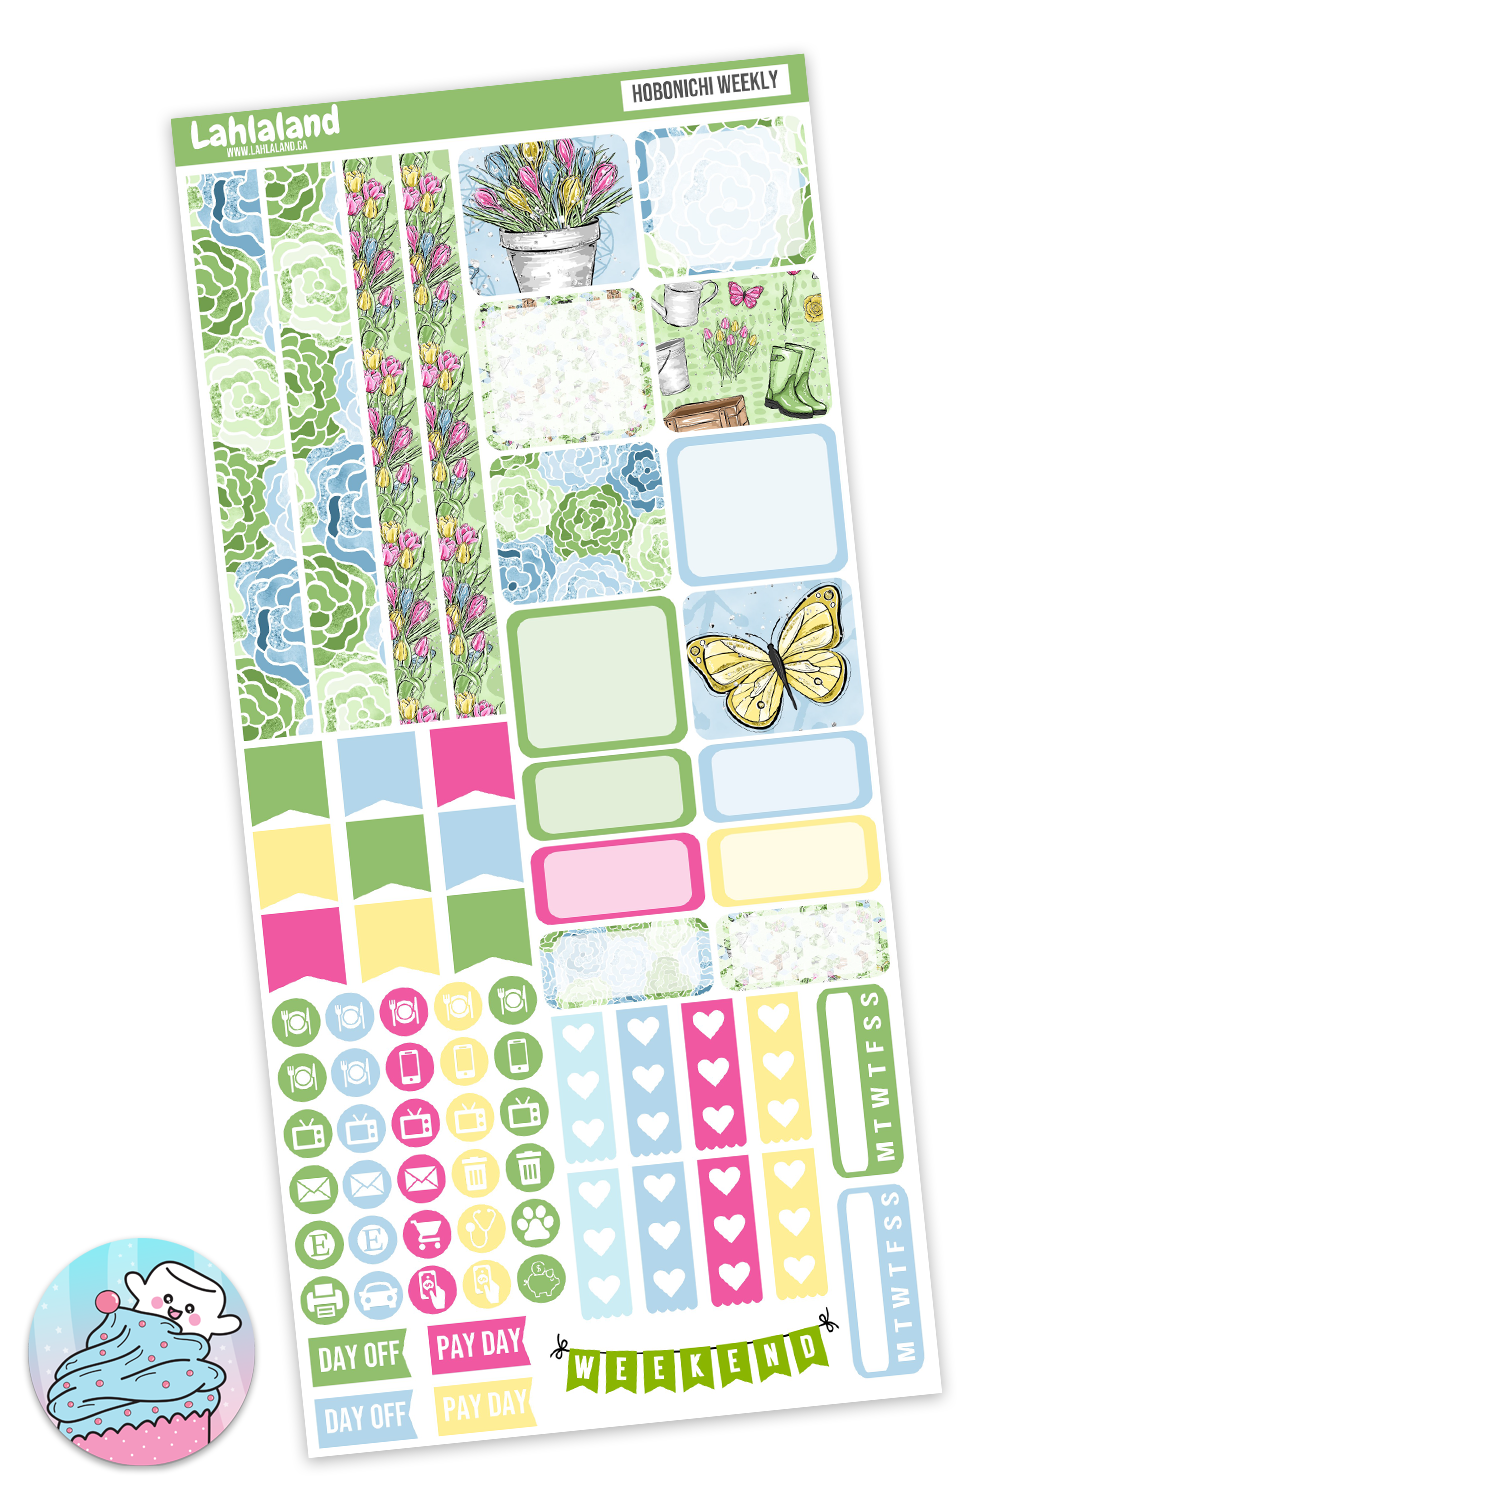 Hobonichi Weeks Spring Weekly Kit Lahlaland Printable Planner